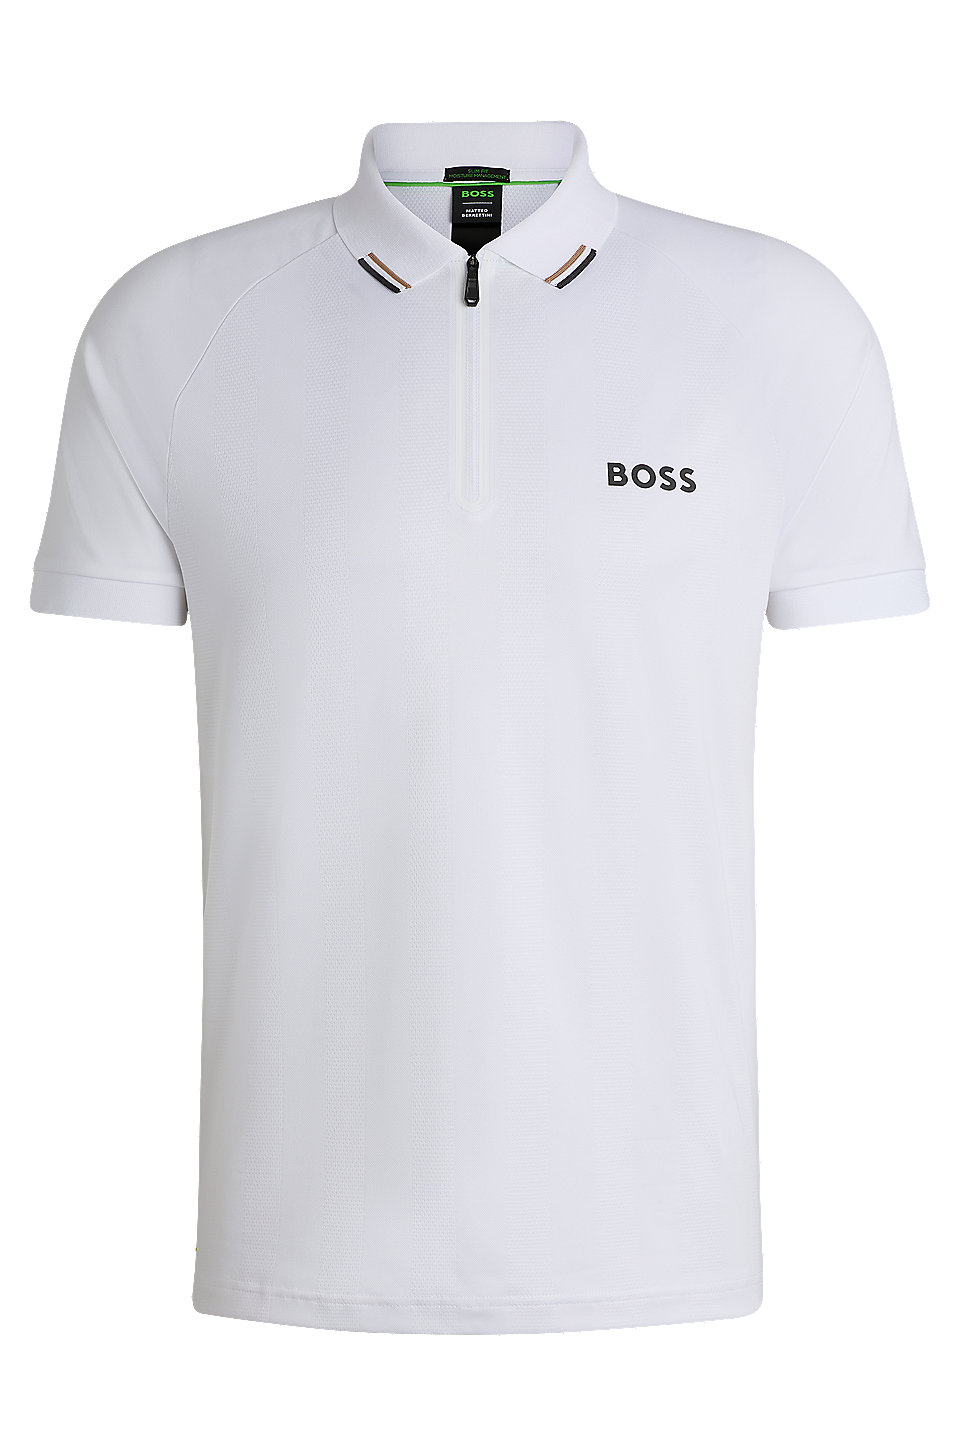 BOSS - BOSS x Matteo Berrettini polo shirt with popcorn stripe